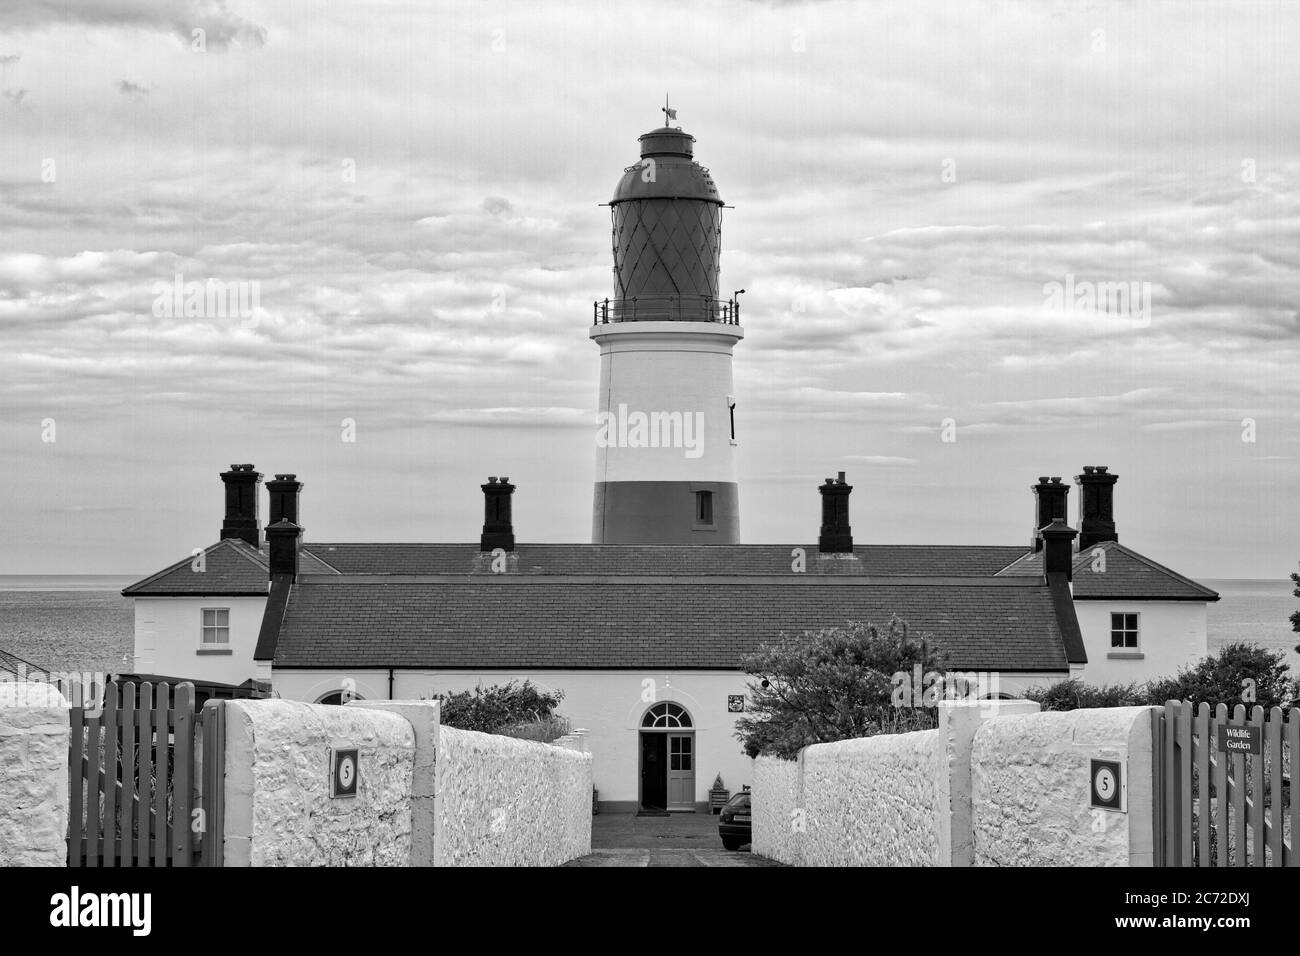 Le phare de Souter sur la côte nord-est de l'Angleterre près de Whitburn, Sunderland, Tyne et Wear. Banque D'Images